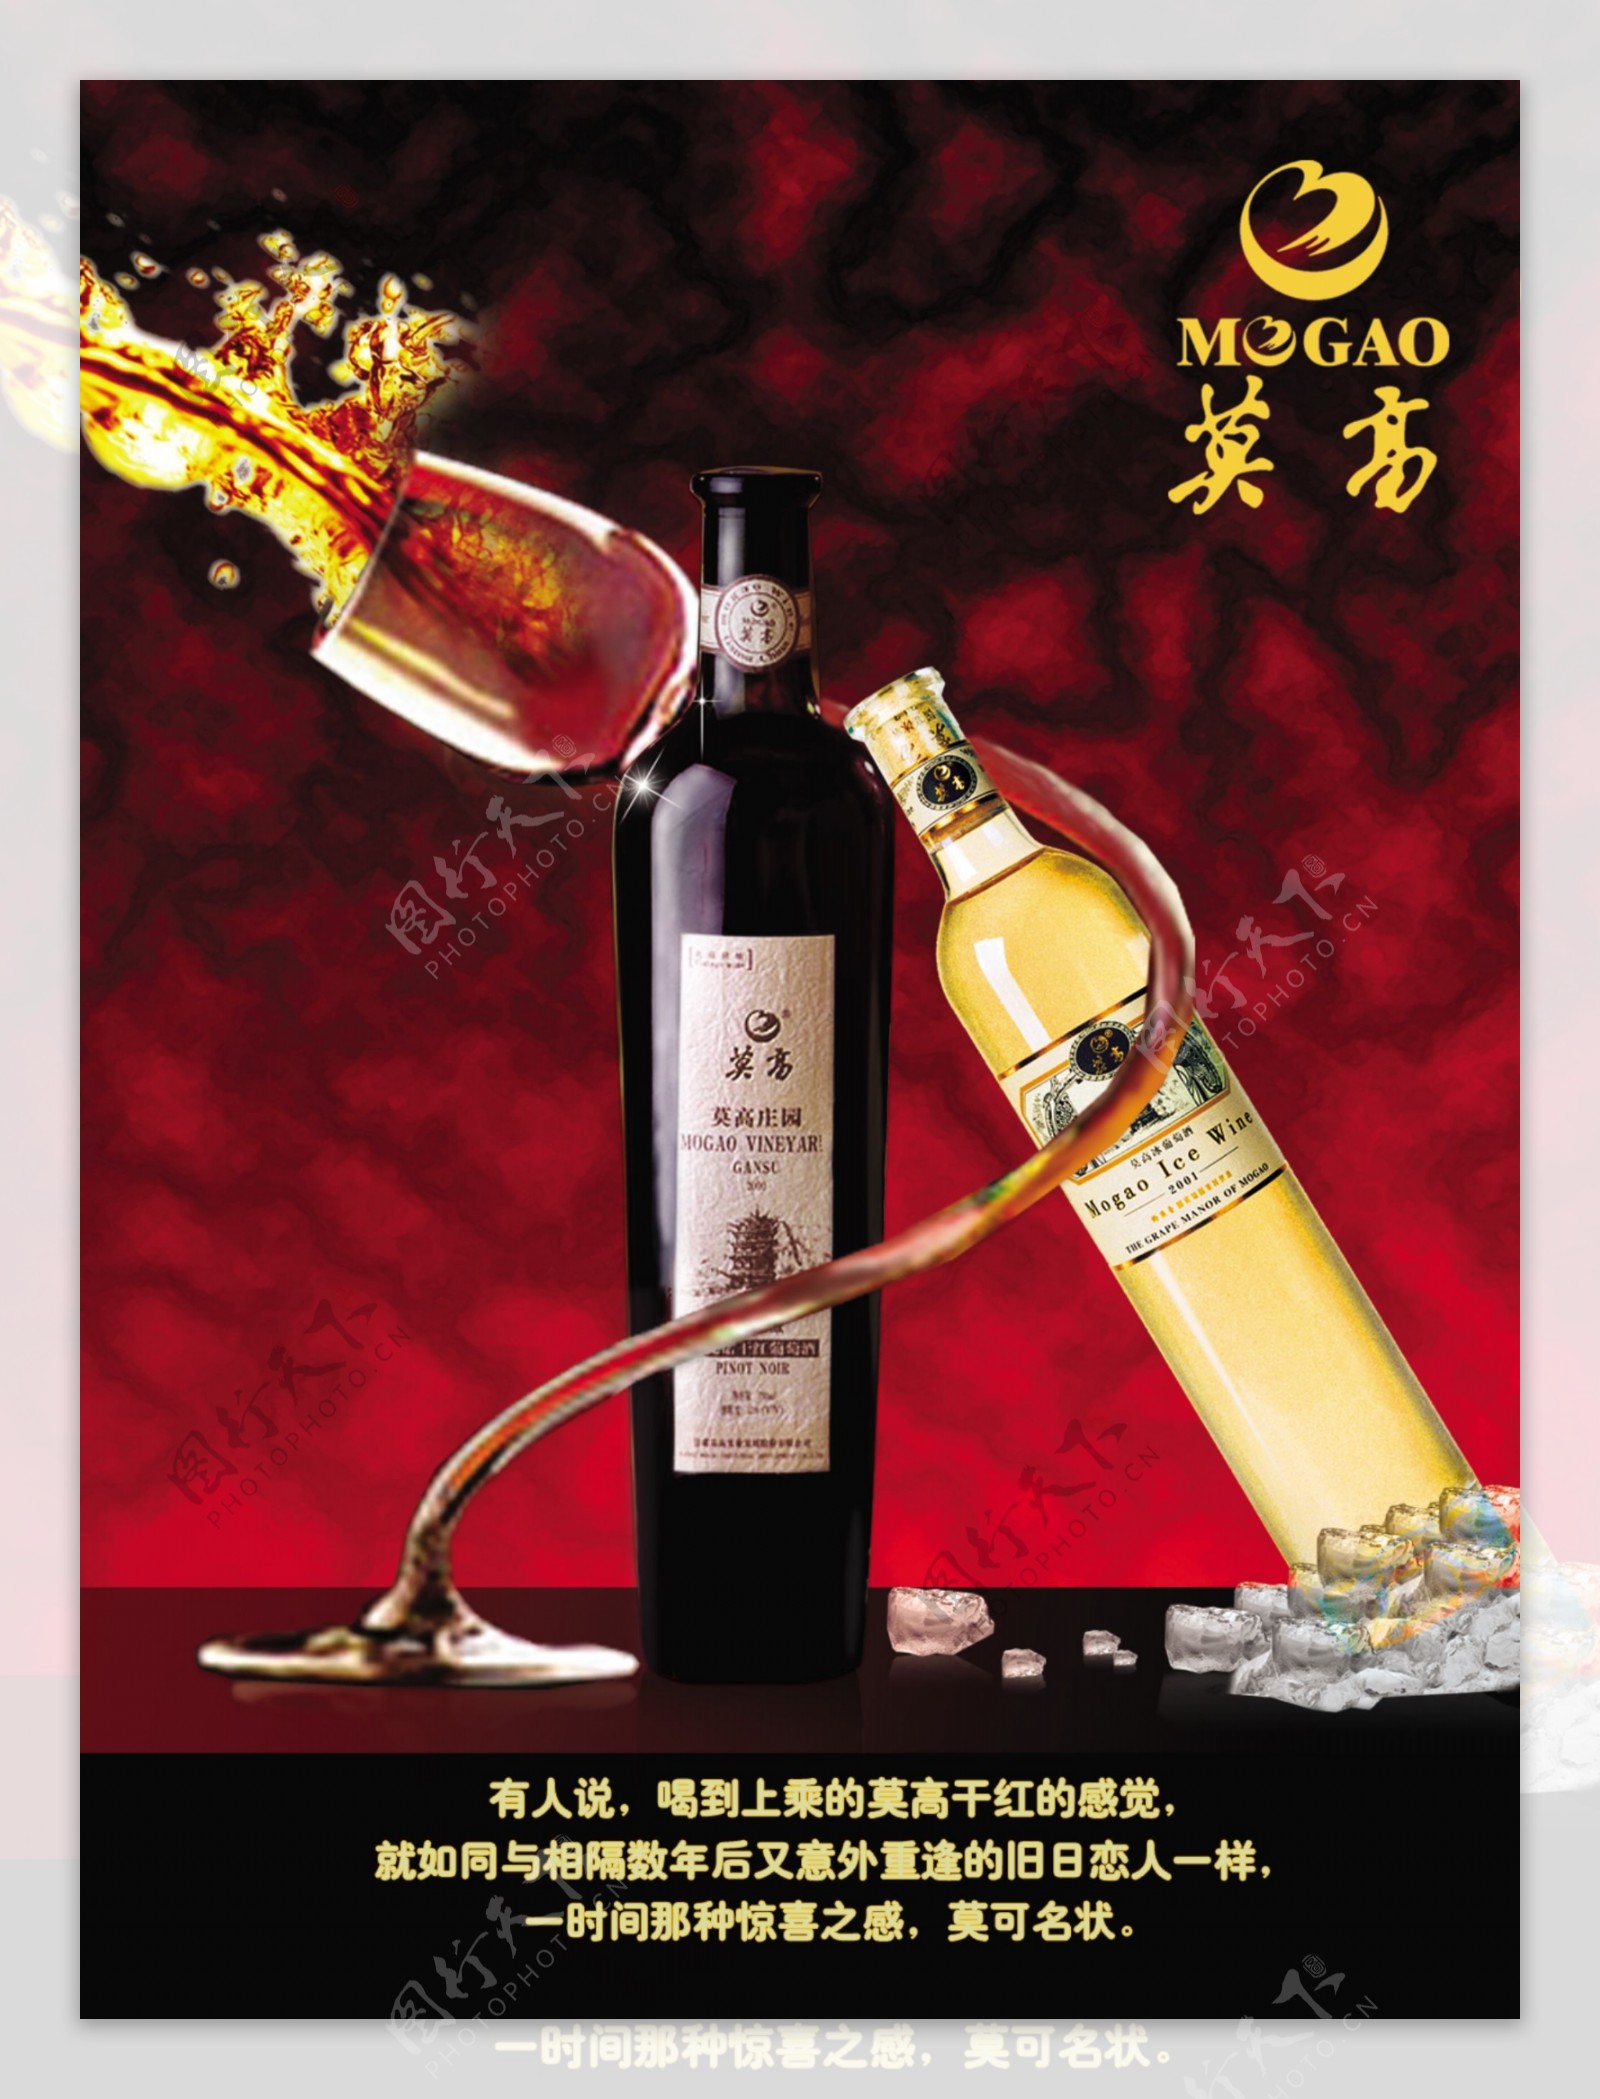 莫高葡萄酒海报广告设计素材